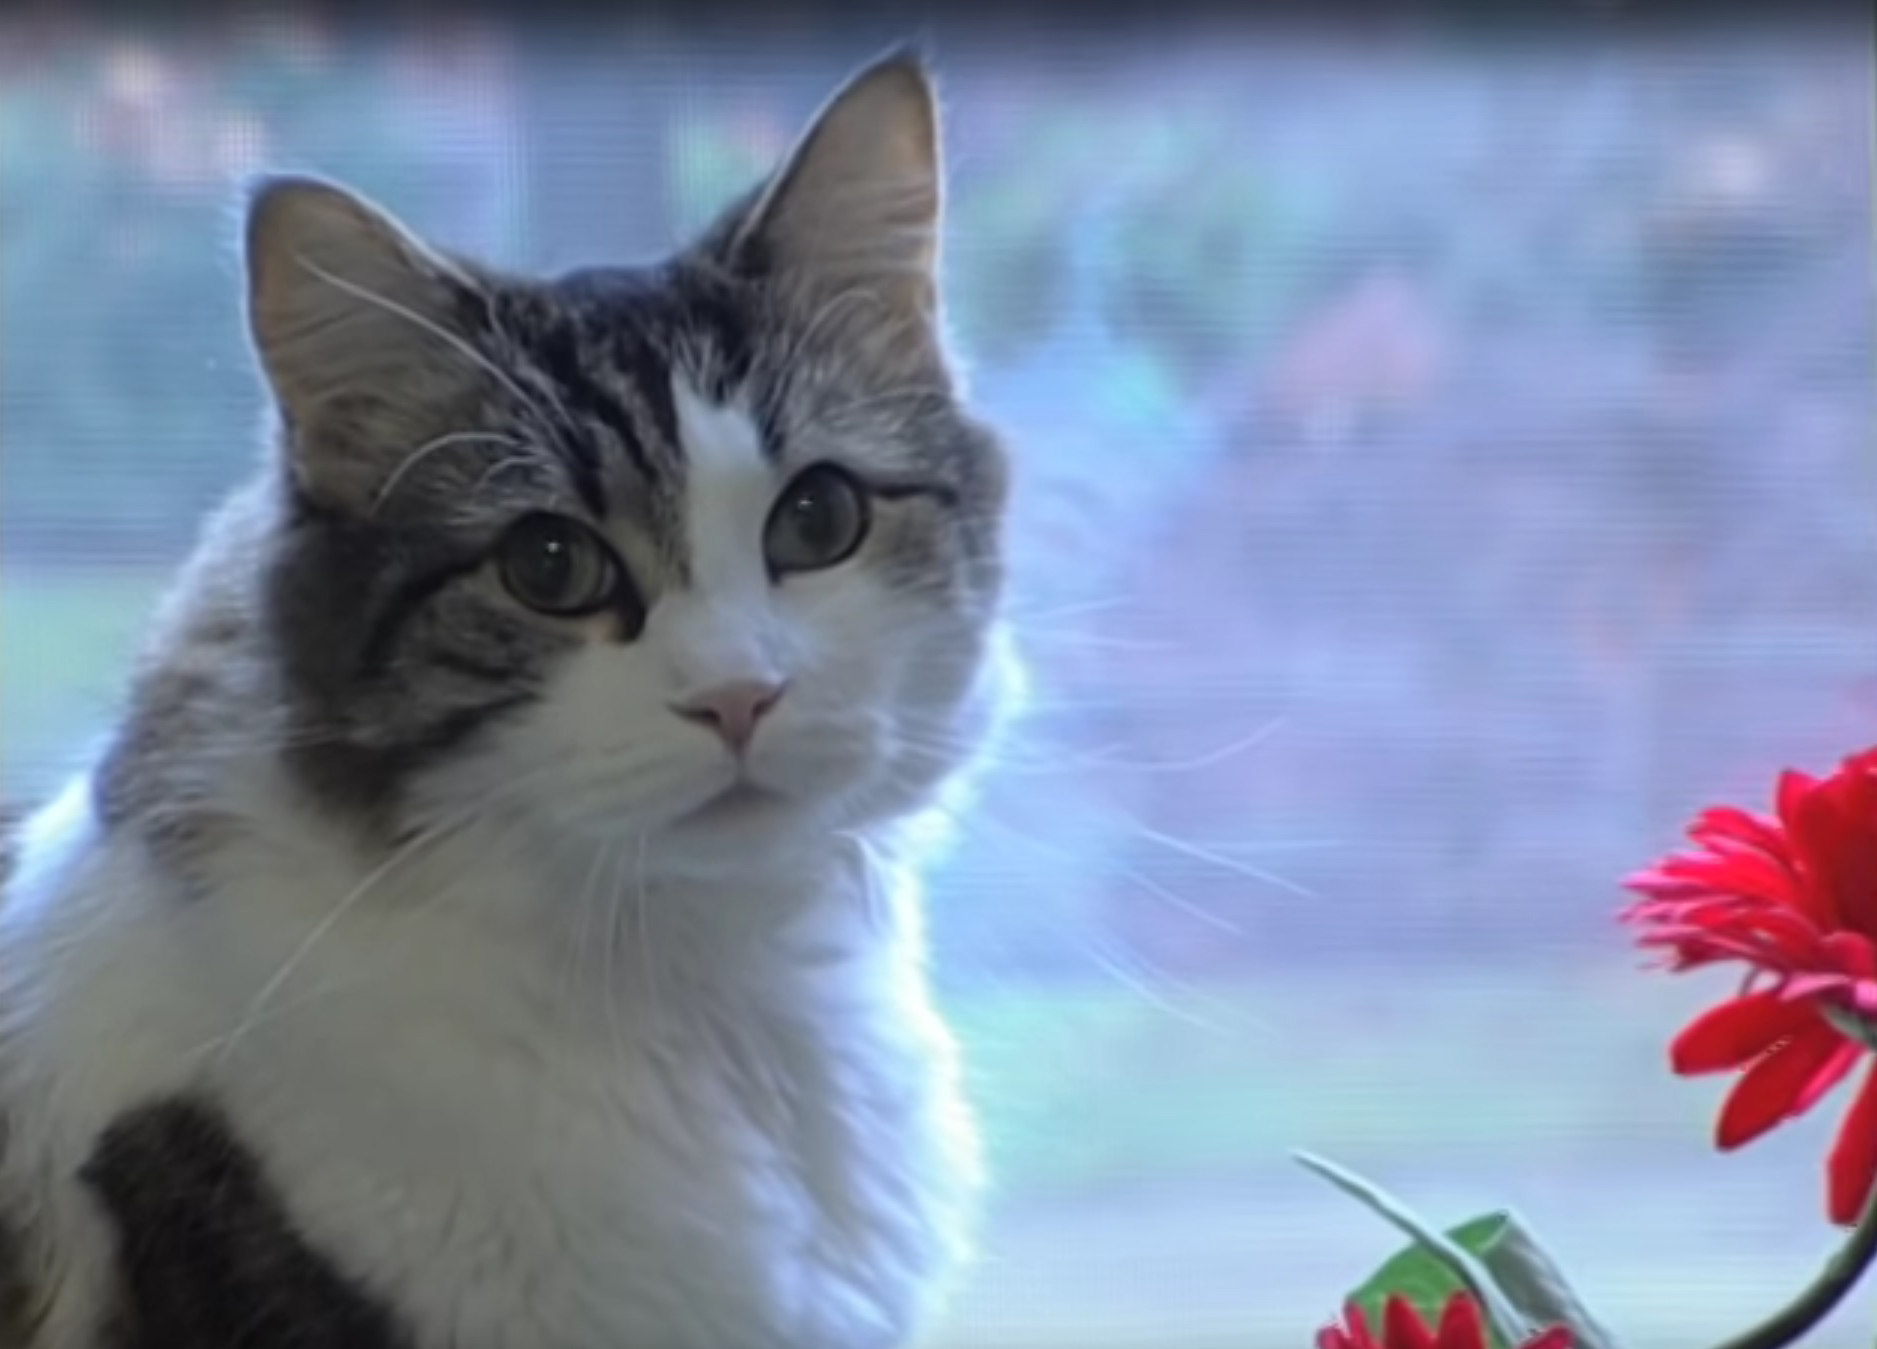 Hátborzongató állat: megjósolja a halált Oscar, a macska - Blikk